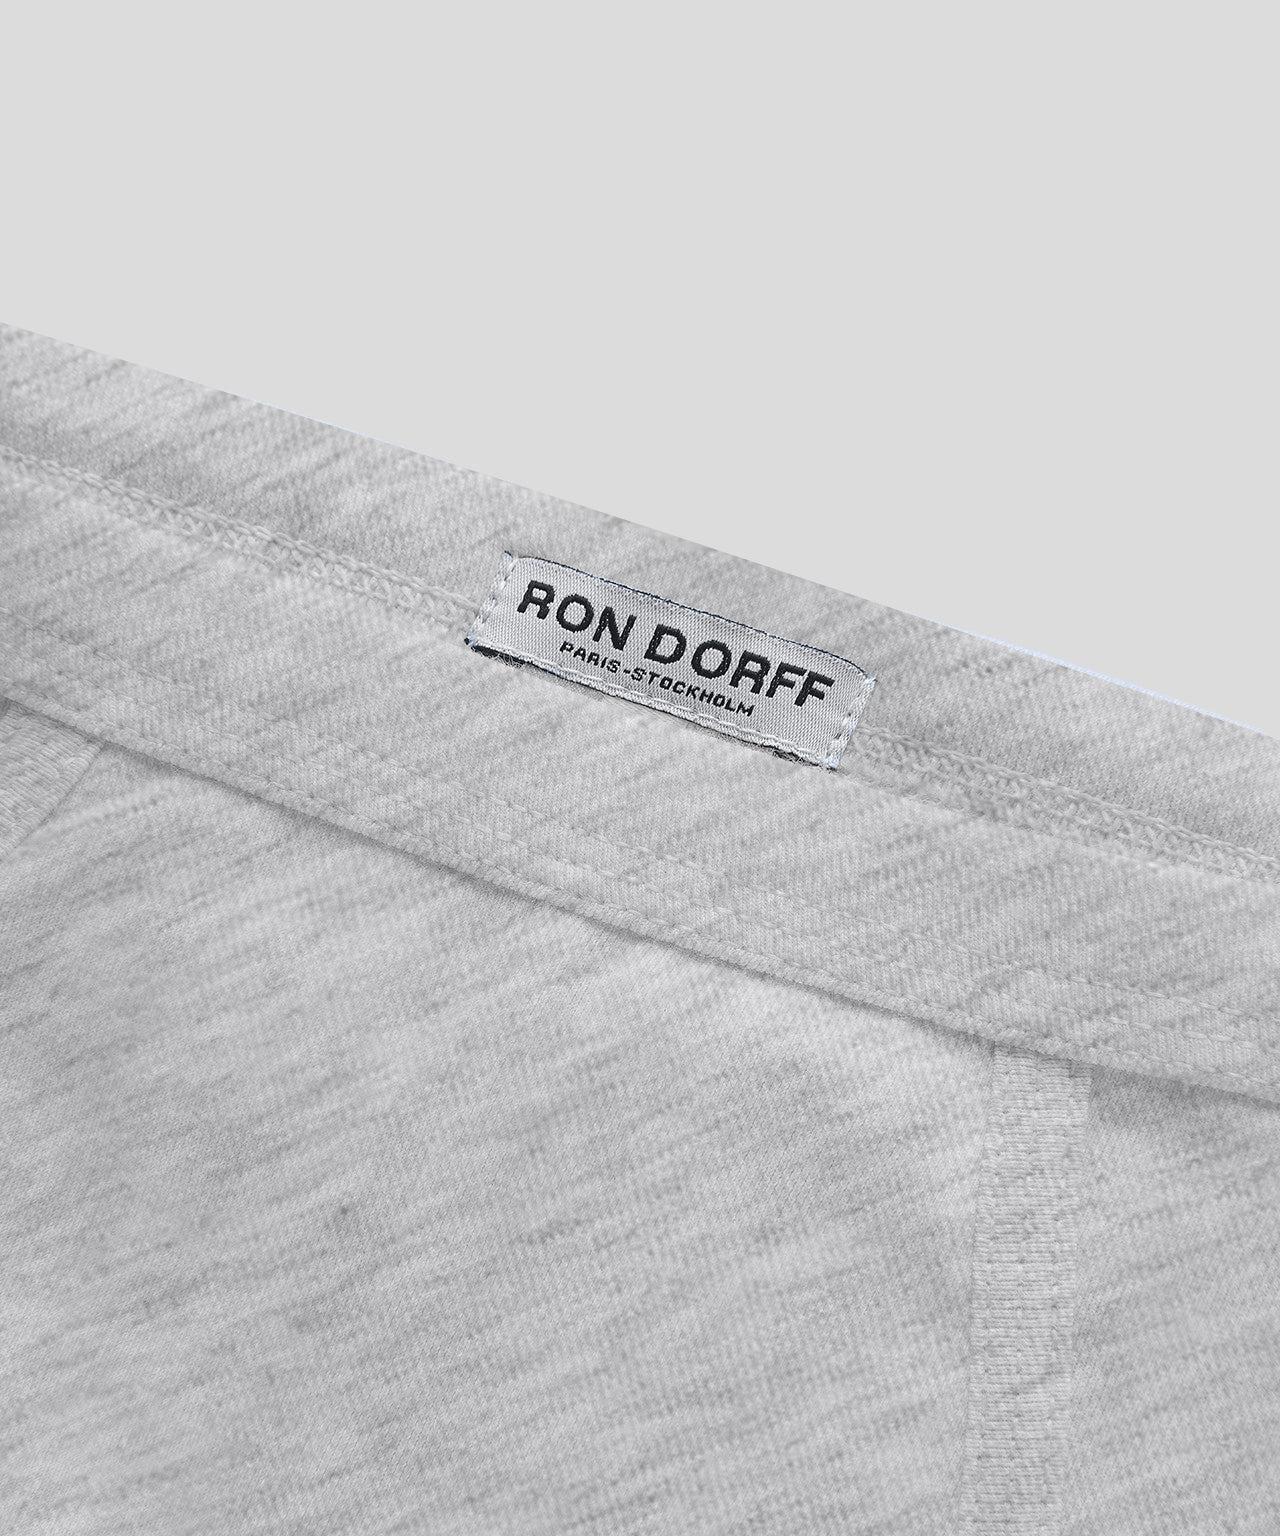 RON DORFF - The iconic no frills, no logo Y-front briefs. #RonDorff  #Menswear #Underwear #Briefs #YfrontBriefs #ElliottReeder @elliottreeder  @justin_fonteneau